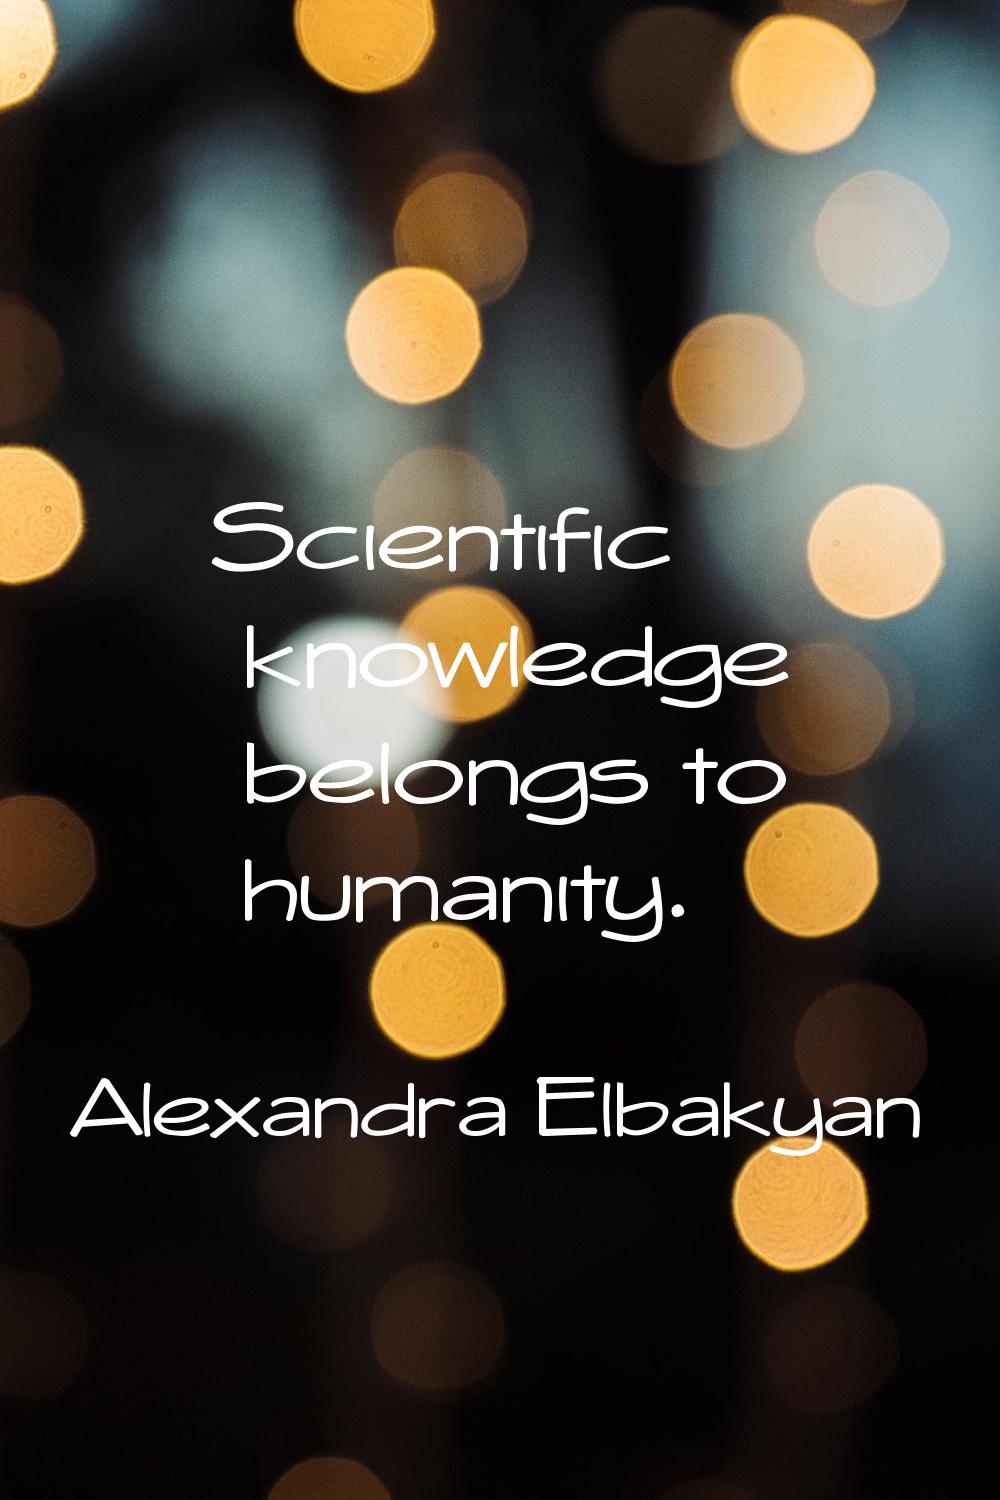 Scientific knowledge belongs to humanity.